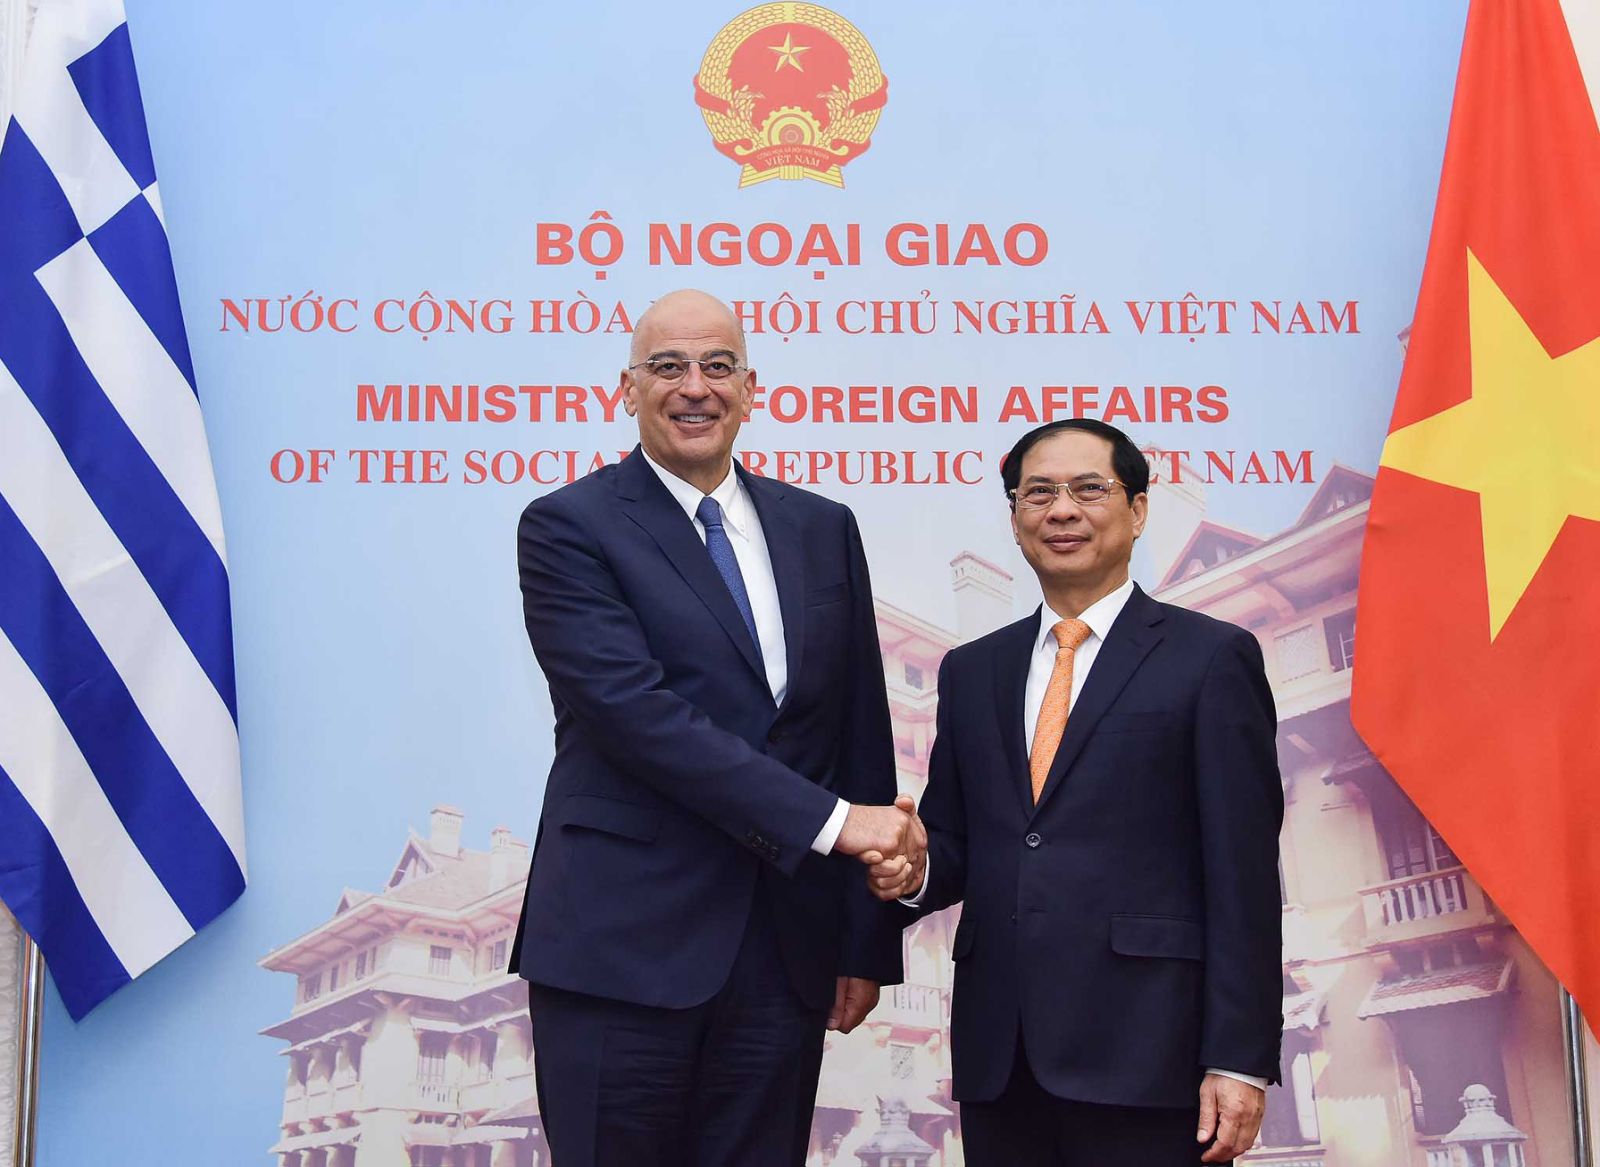 Hiệp định Thương mại Việt Nam-Hy Lạp: Các hợp tác thương mại giữa Việt Nam và Hy Lạp đang được mở rộng và phát triển mạnh mẽ với việc ký kết hiệp định thương mại kỷ lục giữa hai nước. Điều này sẽ mang lại nhiều cơ hội cho các doanh nghiệp ở hai bên để tăng cường thương mại và đầu tư, đồng thời cũng là bước tiến lớn trong quan hệ hợp tác Việt Nam-Hy Lạp.